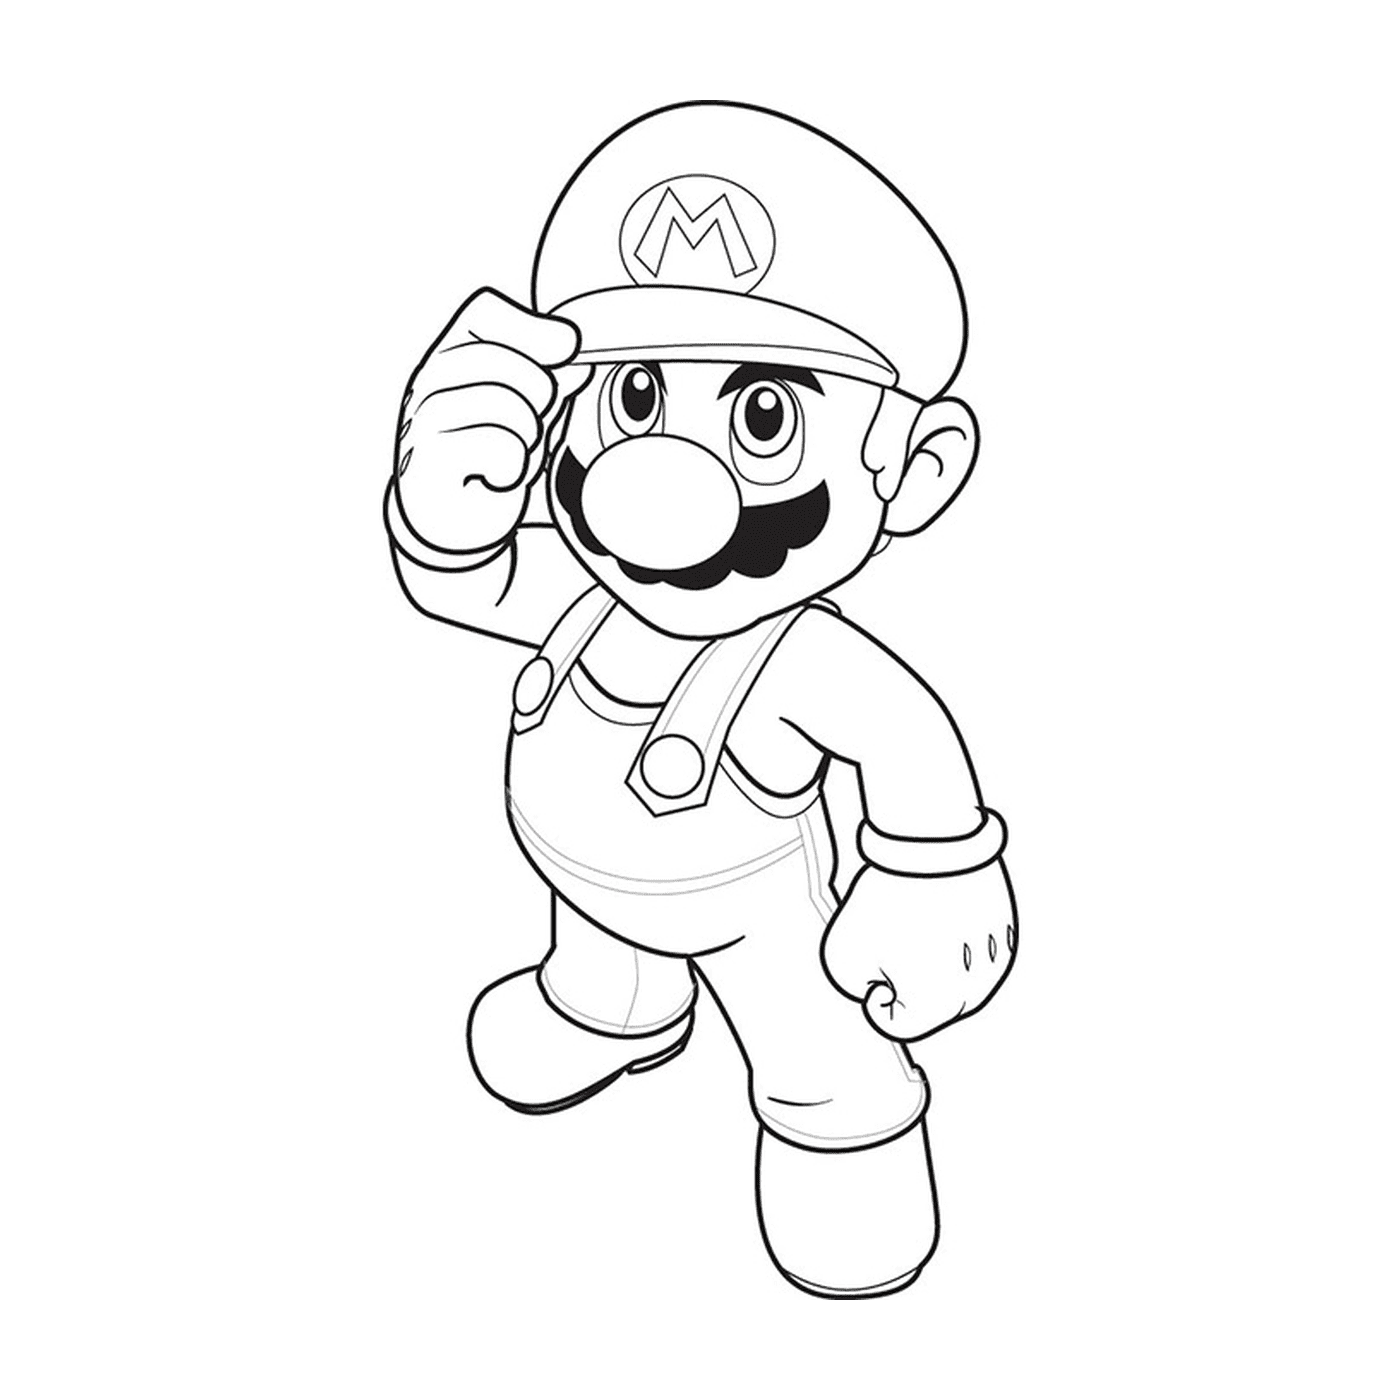  Colore Mario Bros su Nintendo 